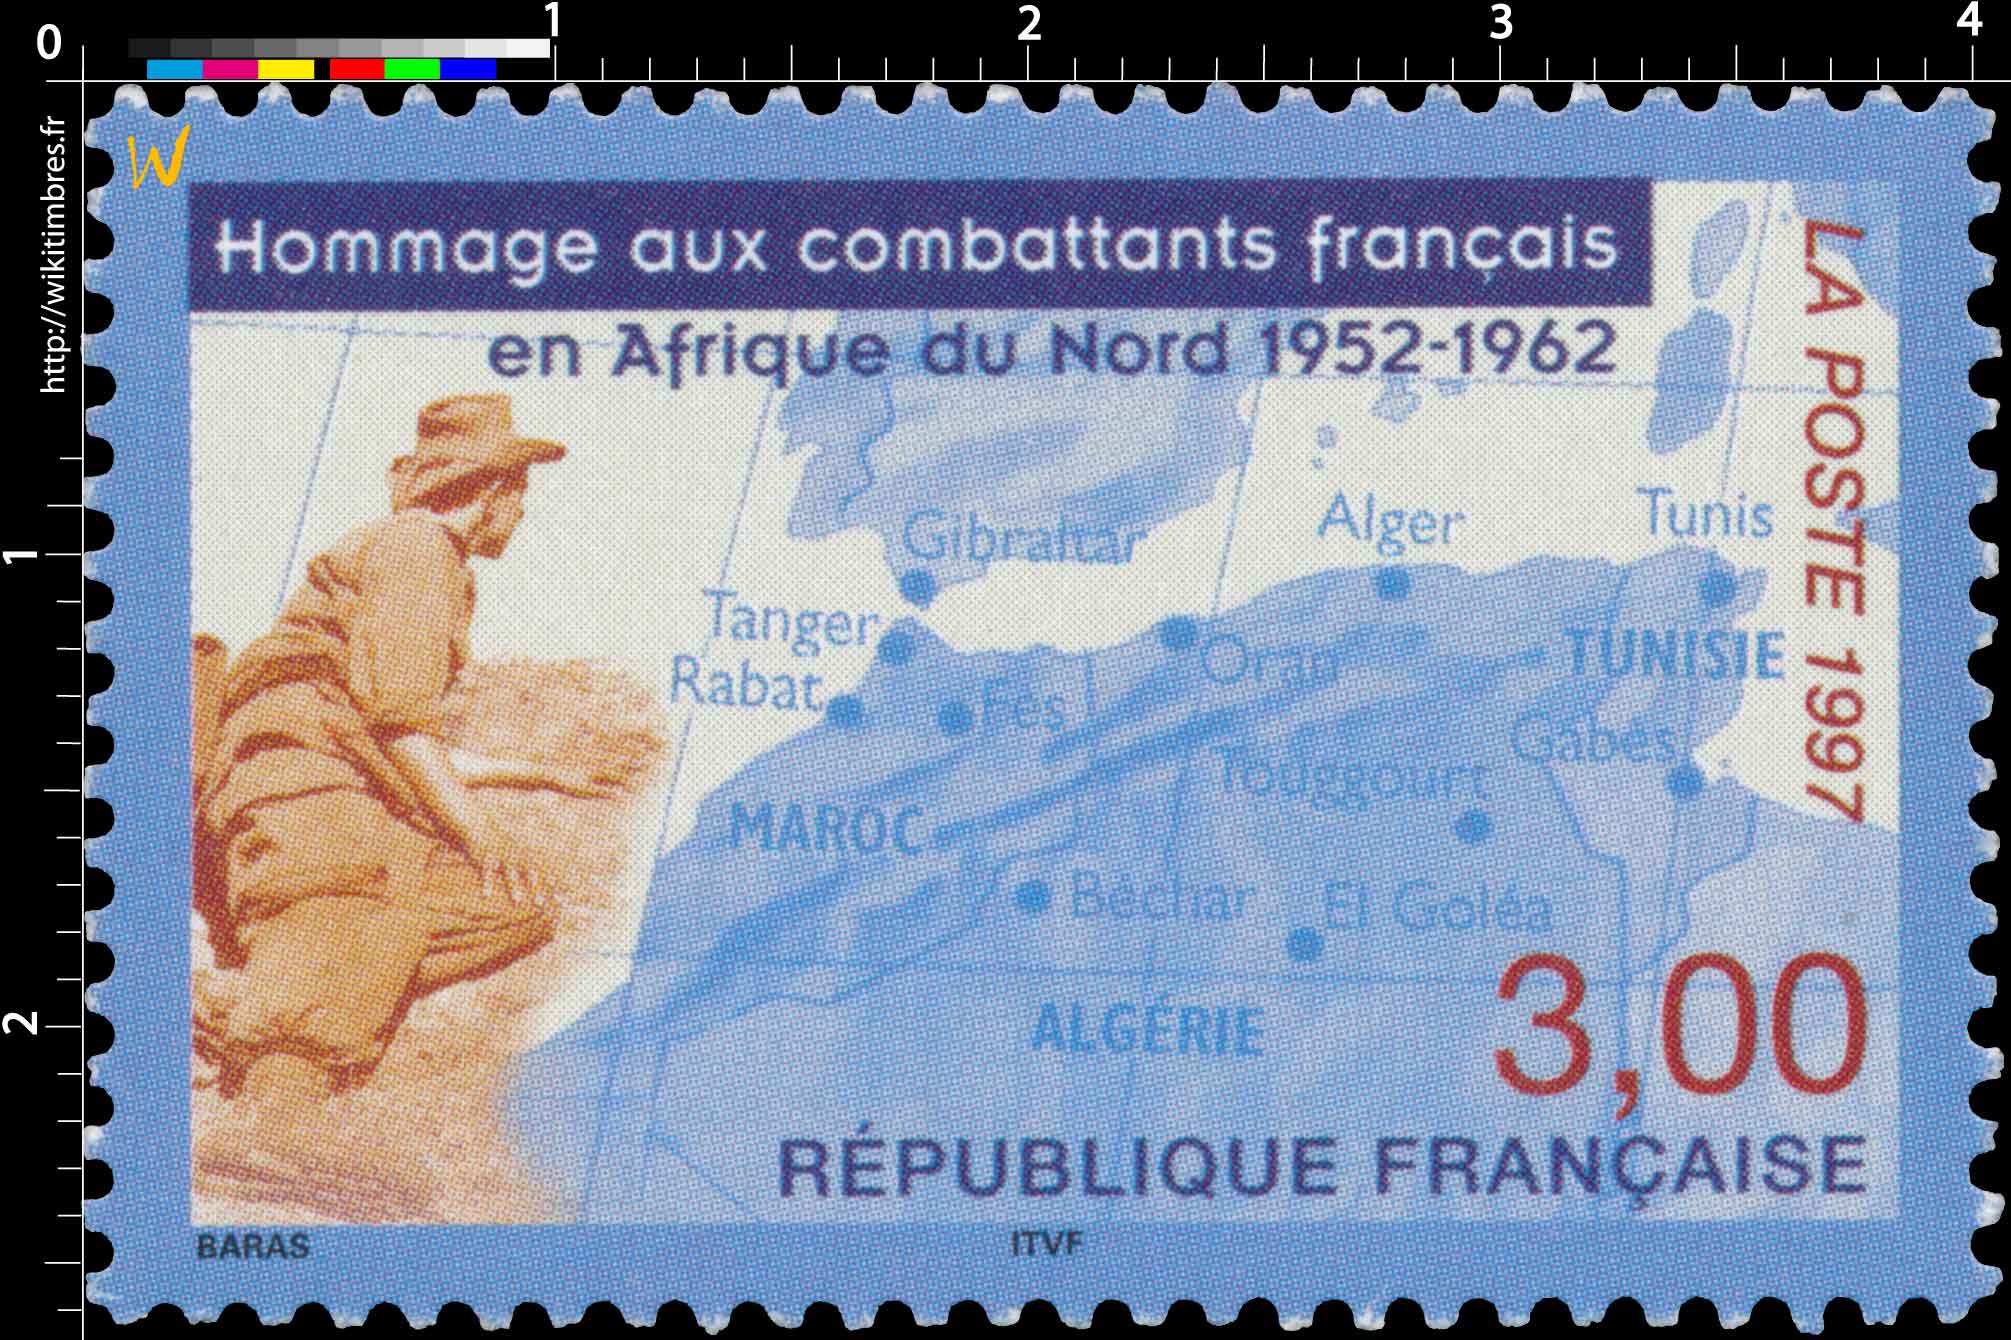 1997 Hommage aux combattants français en Afrique du Nord 1952-1962